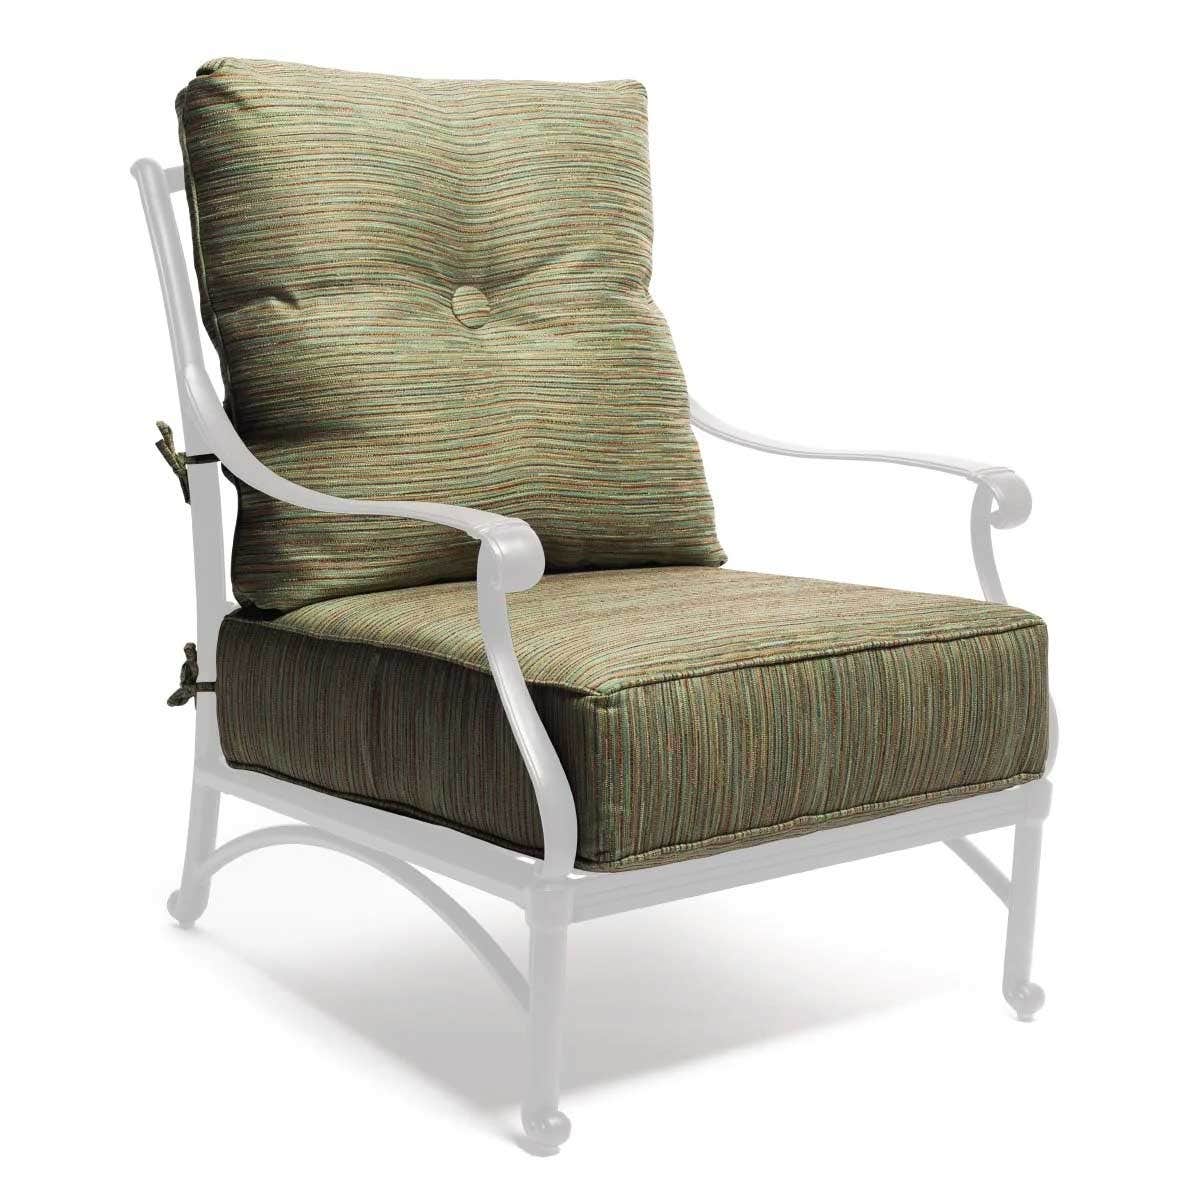 Casual Cushion Estate Series Deep Seating Club Cushion in Lally Garden Chair & Sofa Cushions 12025706